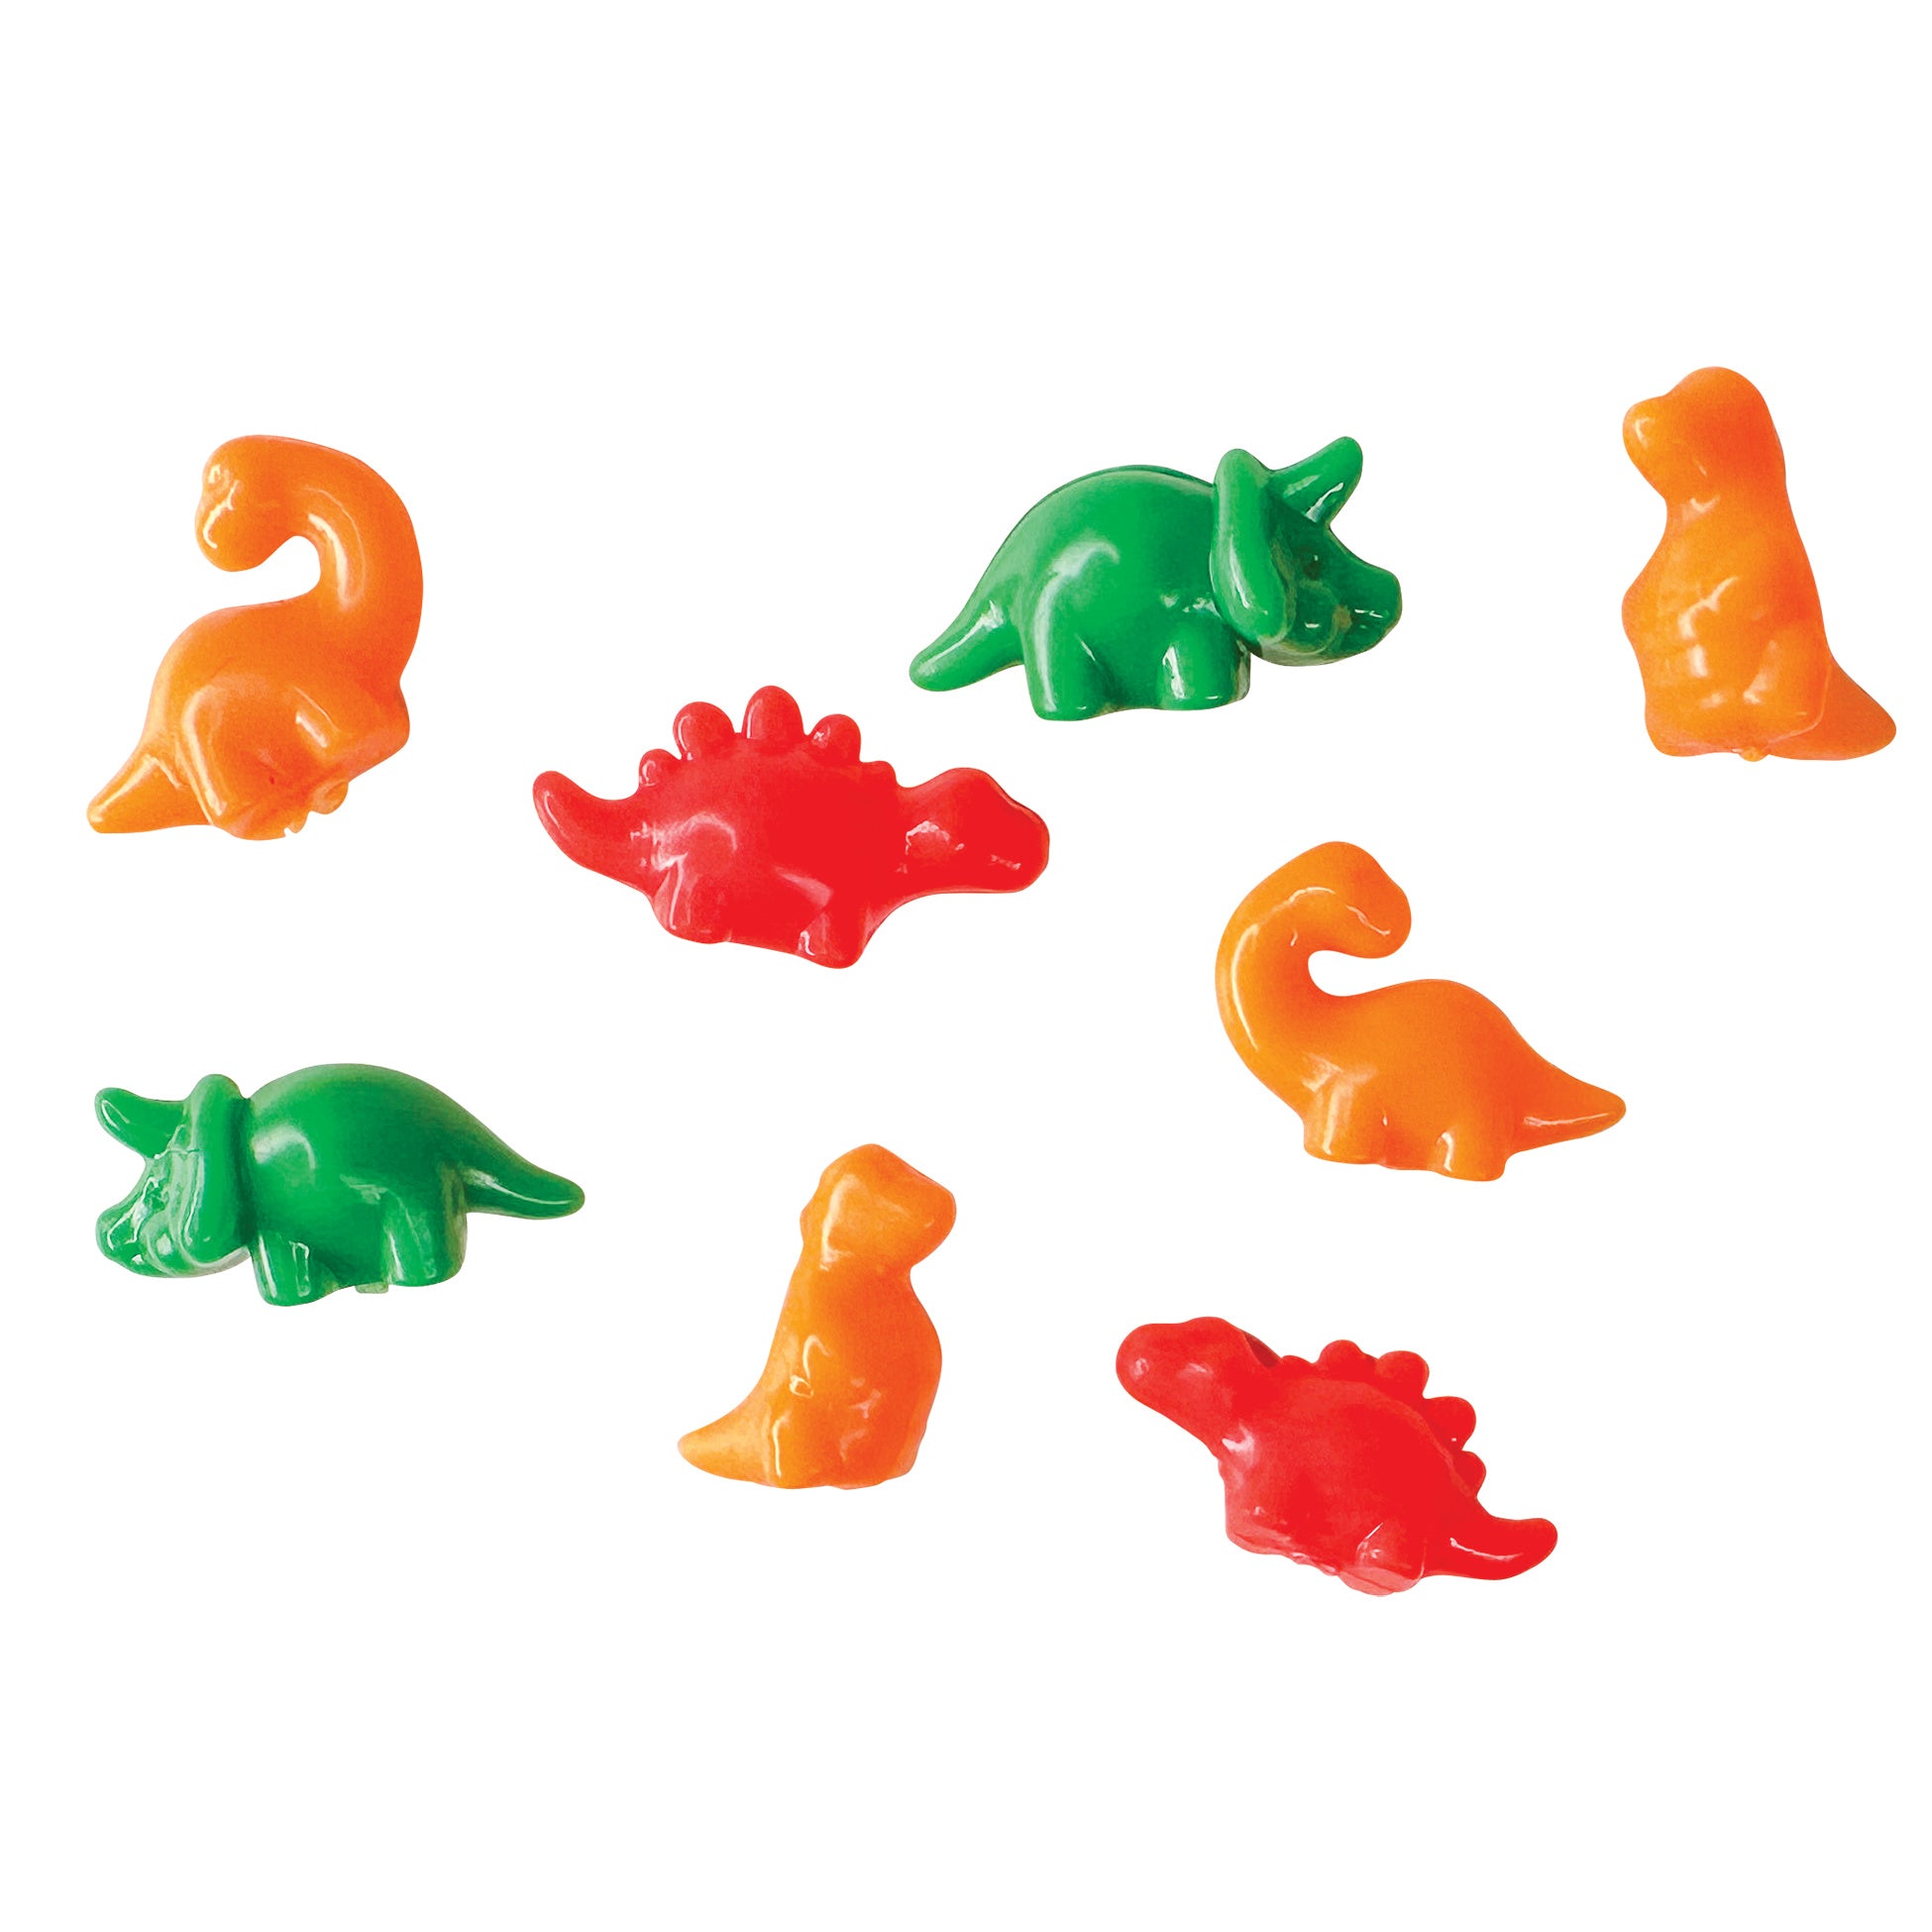 Dino Claw Machine Toys